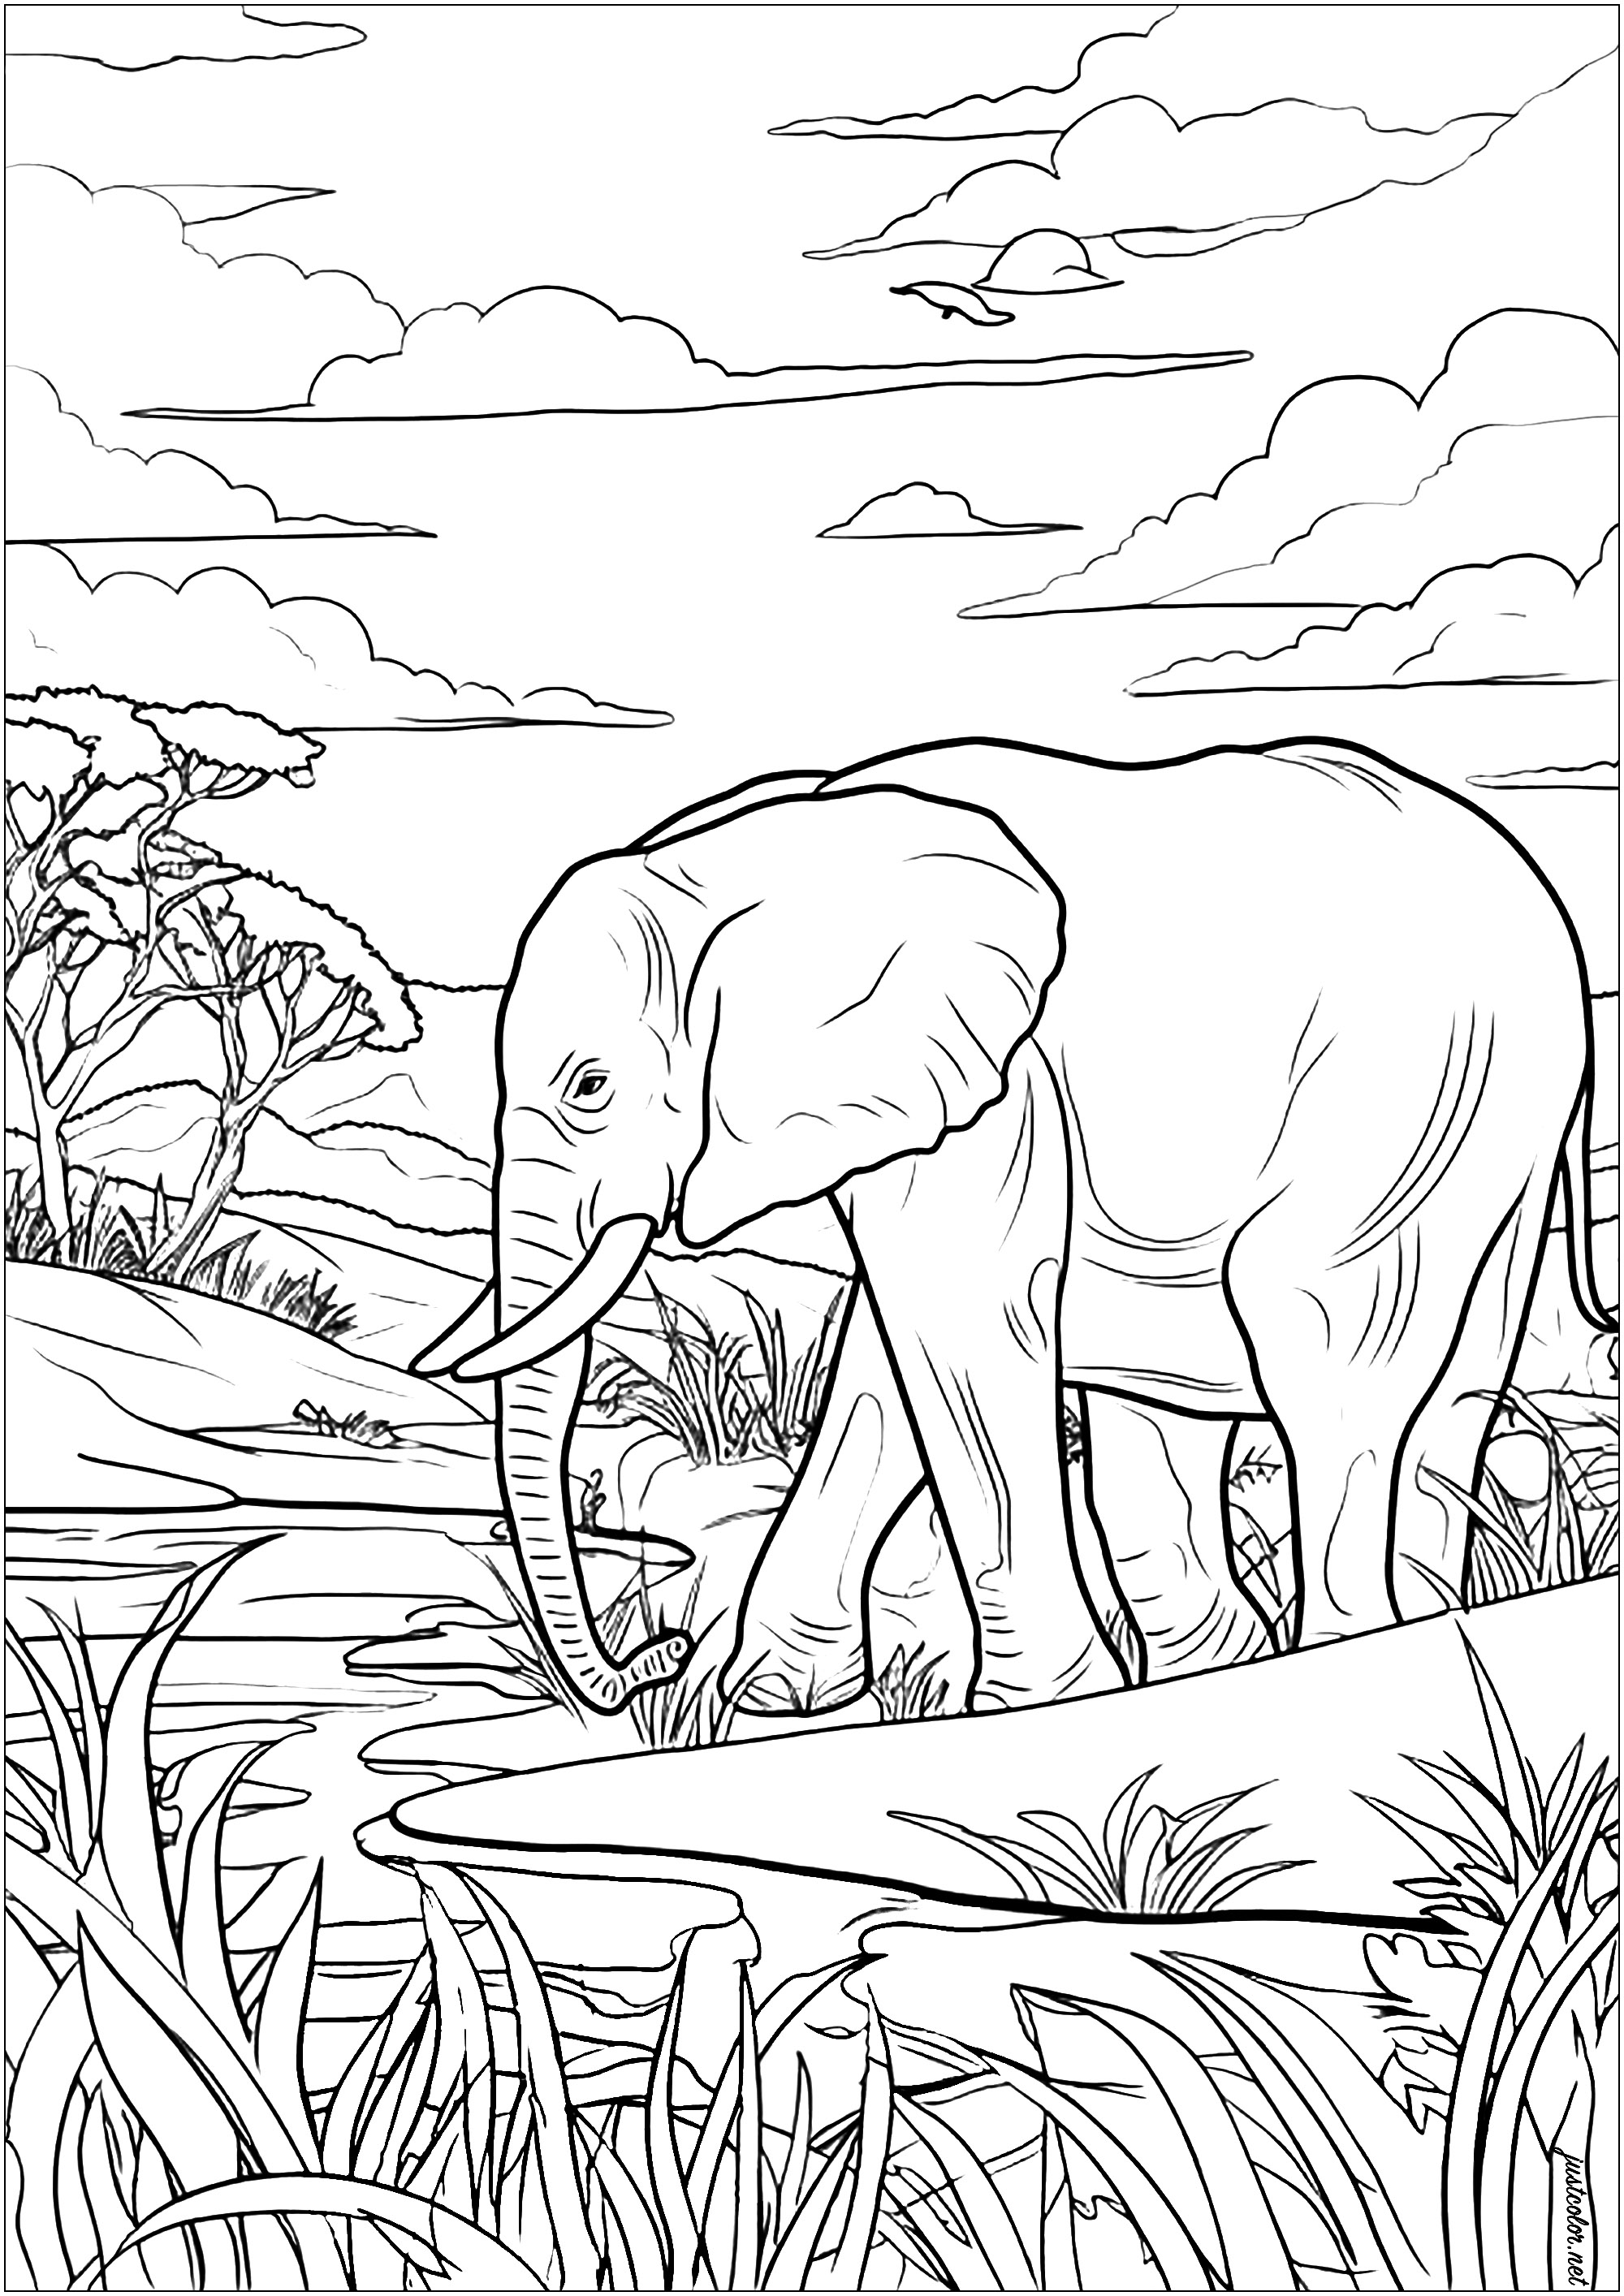 Colorazione di un vecchio elefante che si muove pacificamente nella savana africana. Una pagina da colorare ricca di dettagli, molto rilassante. Questo saggio pachiderma avanza maestoso, osservando gli alberi e le erbe che lo circondano.